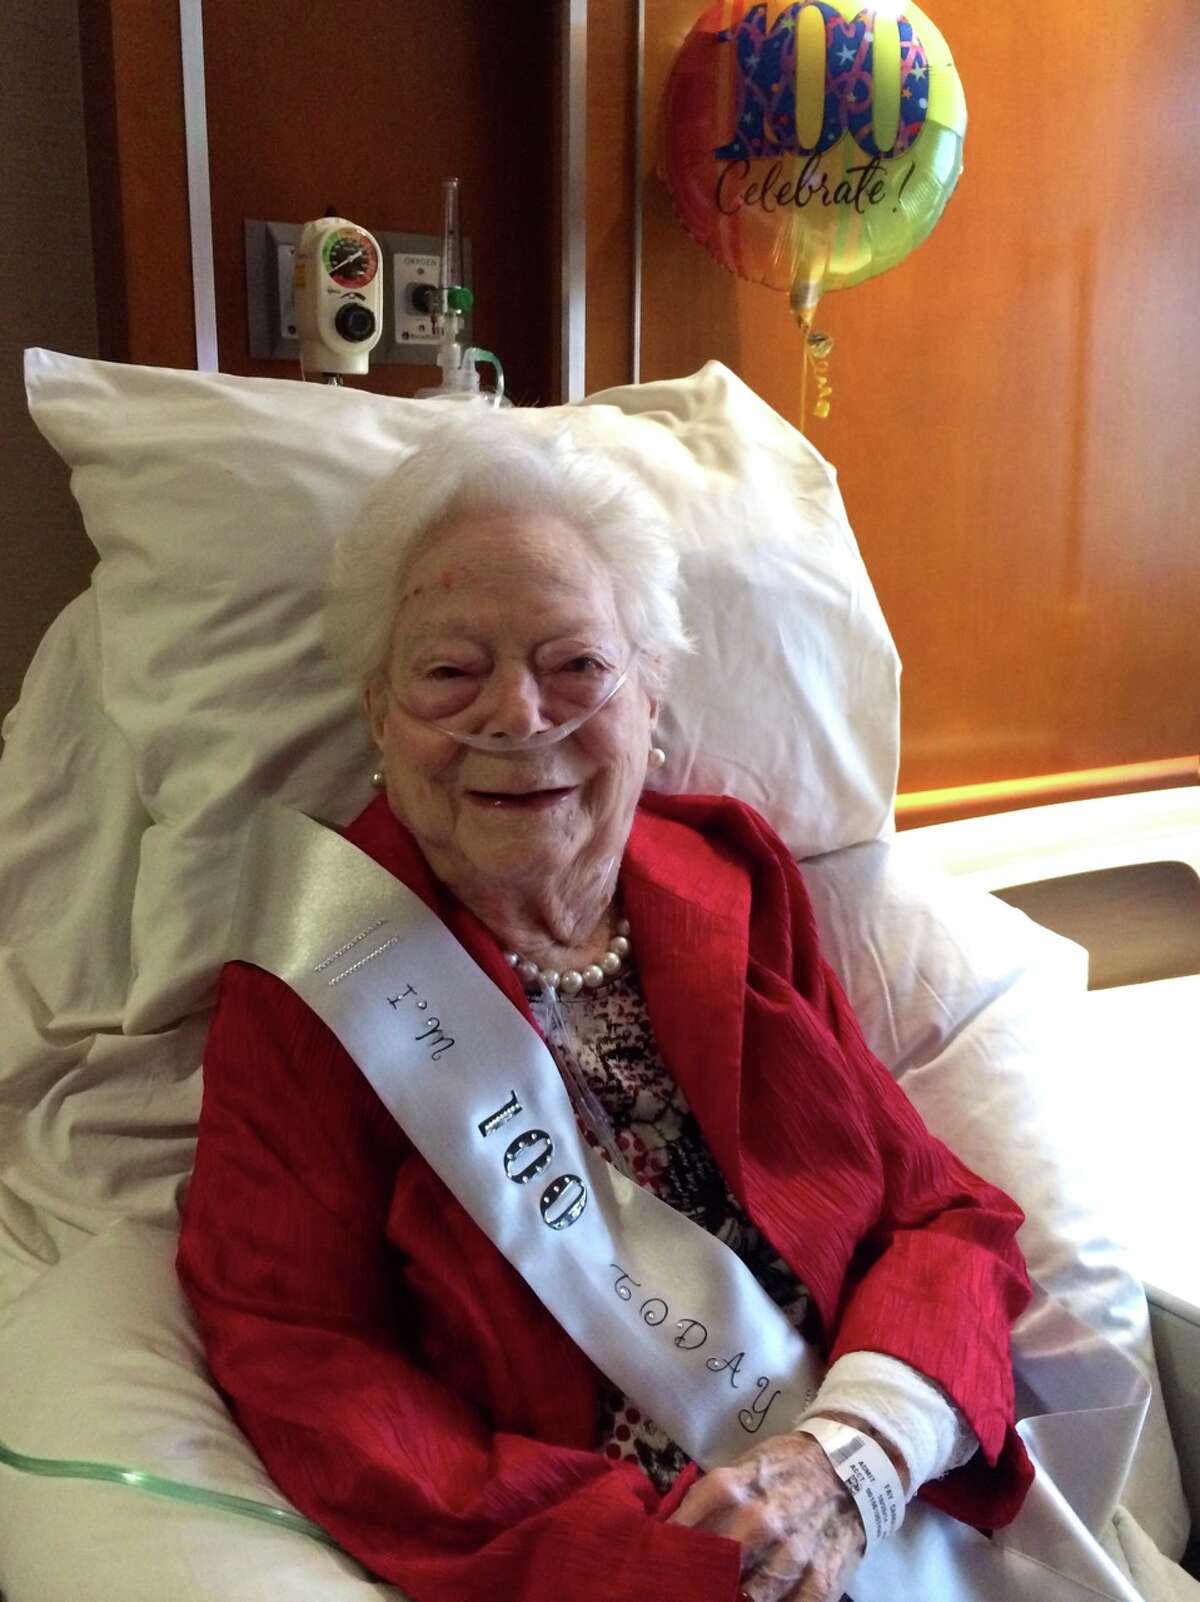 Carolyn Grant Fay celebrated her 100th birthday on Nov. 6.